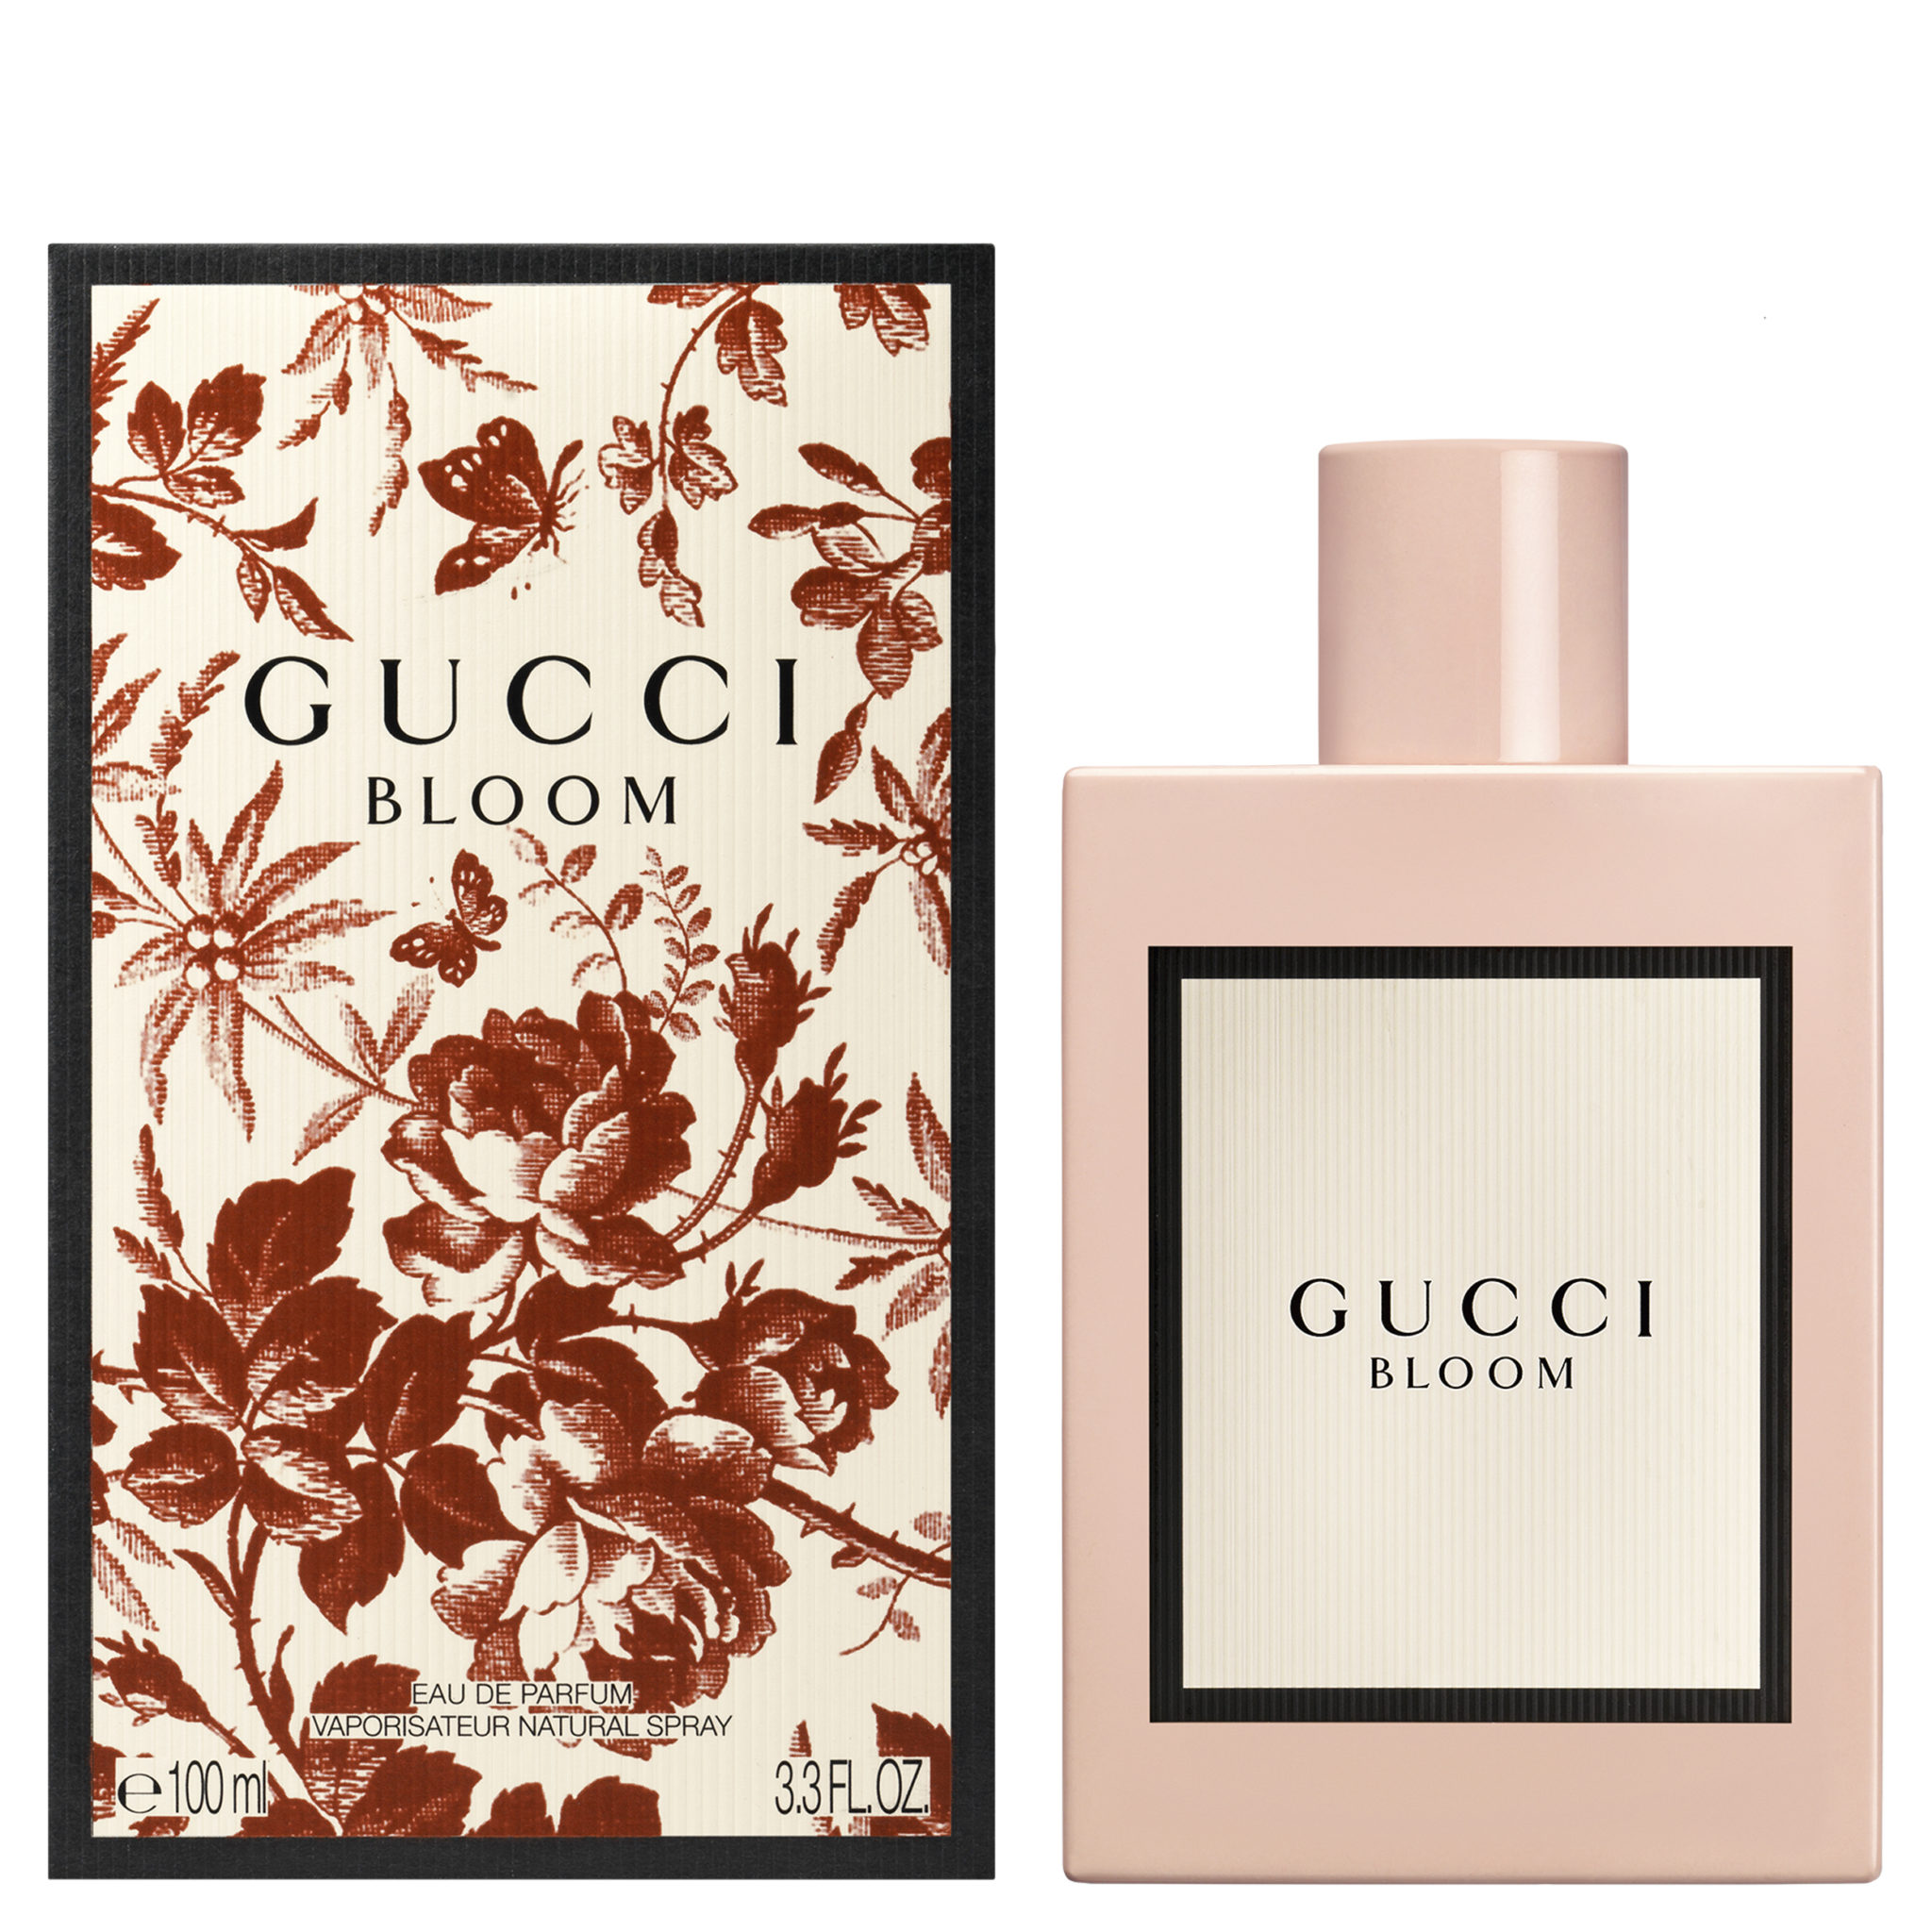 Gucci Bloom_Miglior creazione olfattiva femminile